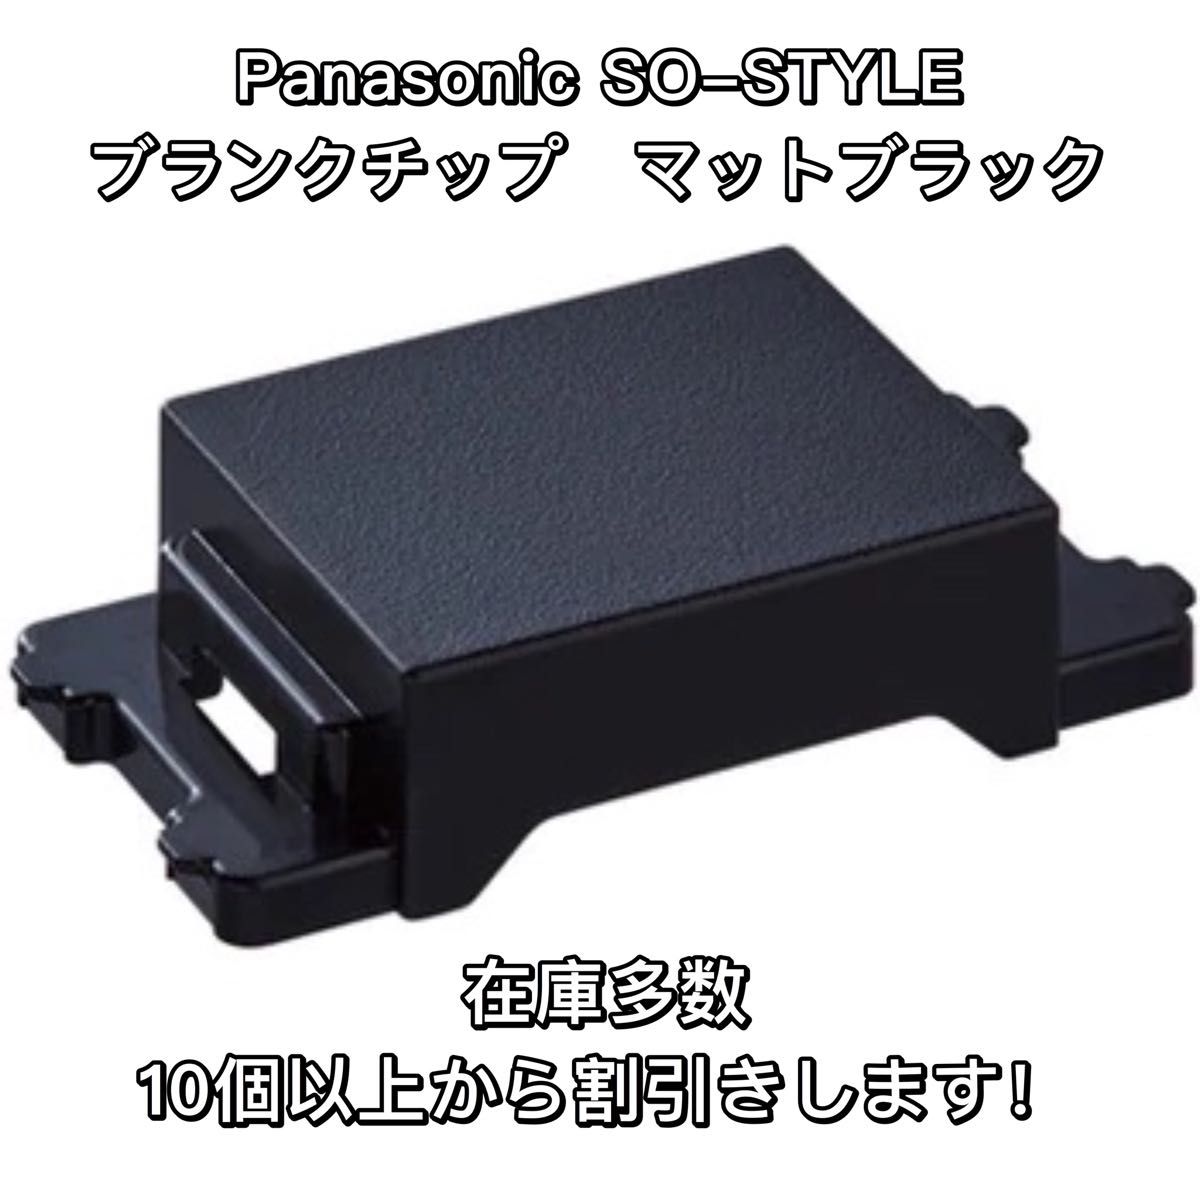 Panasonic SO-STYLE ブランクチップ マットブラック WN3020MB 5個